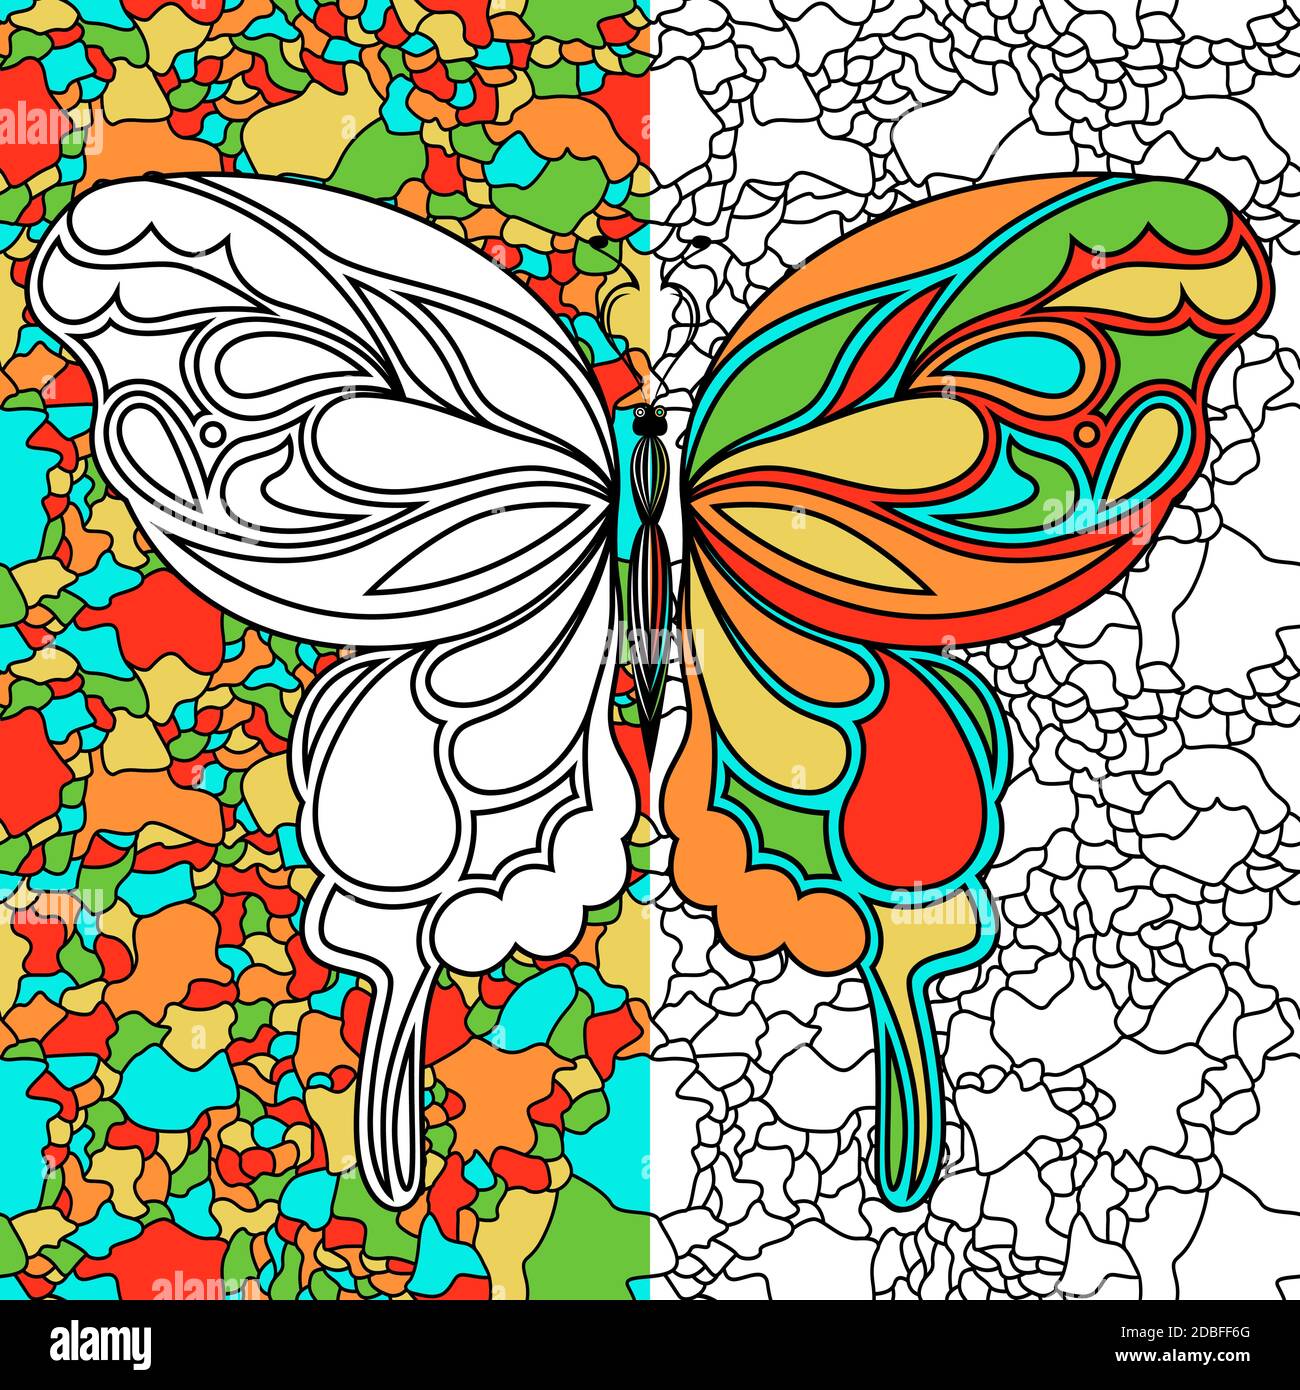 Stencil ornamentali colorati di una bella farfalla sullo sfondo del mosaico, disegnando a mano l'illustrazione vettoriale come un libro da colorare Illustrazione Vettoriale